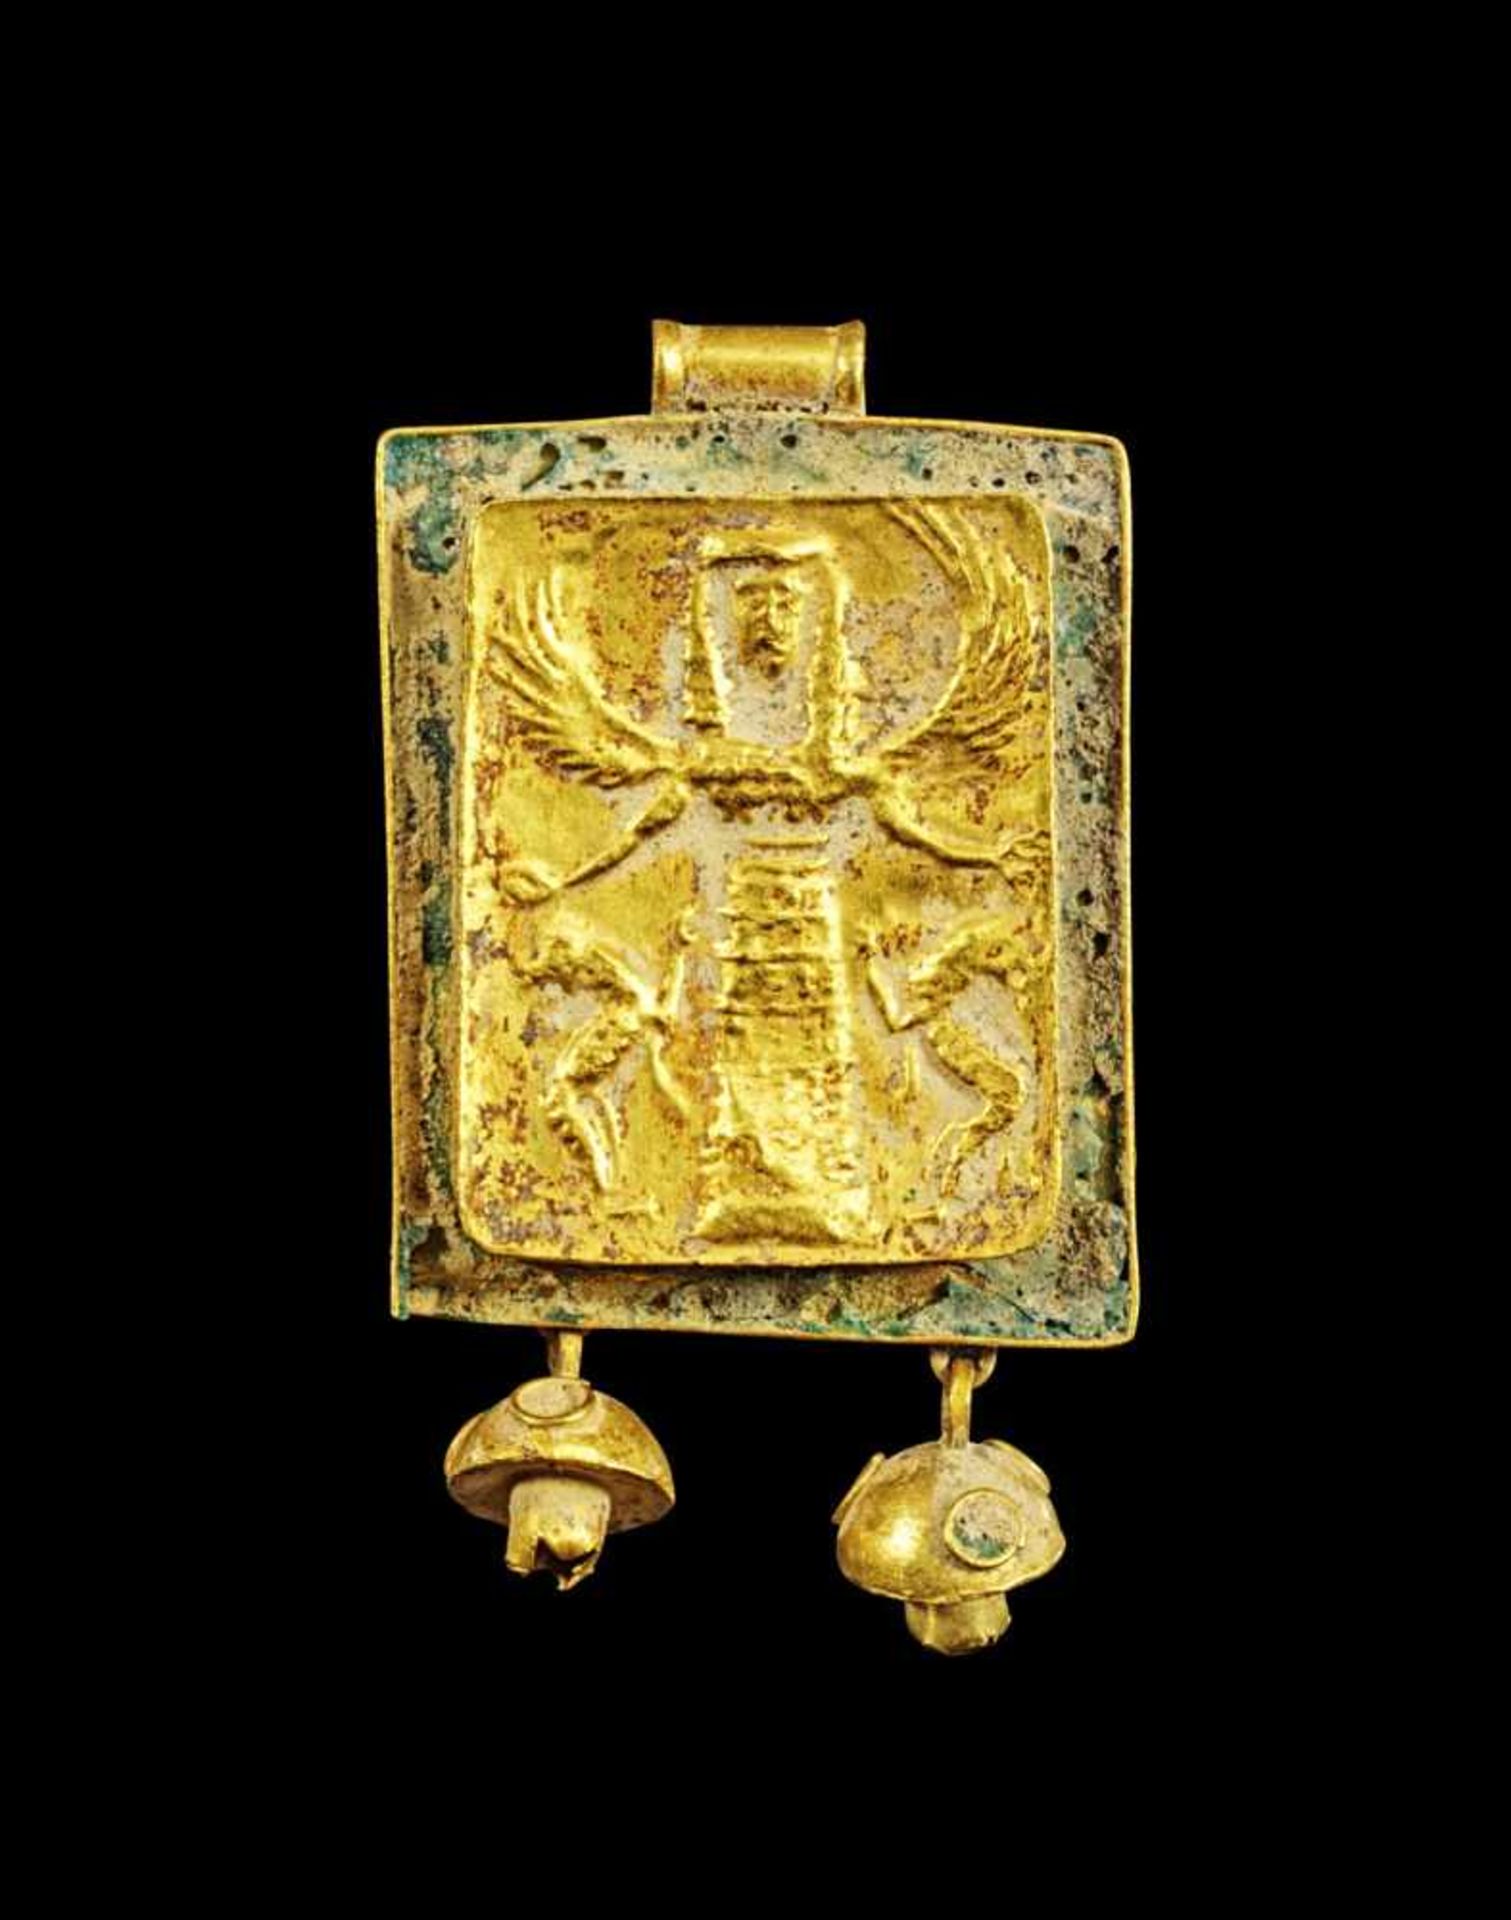 Element eines Goldpektorals mit Email. Rhodisch, 650 - 600 v. Chr. 9,63g, 2 x 2,5cm. Rechteckige